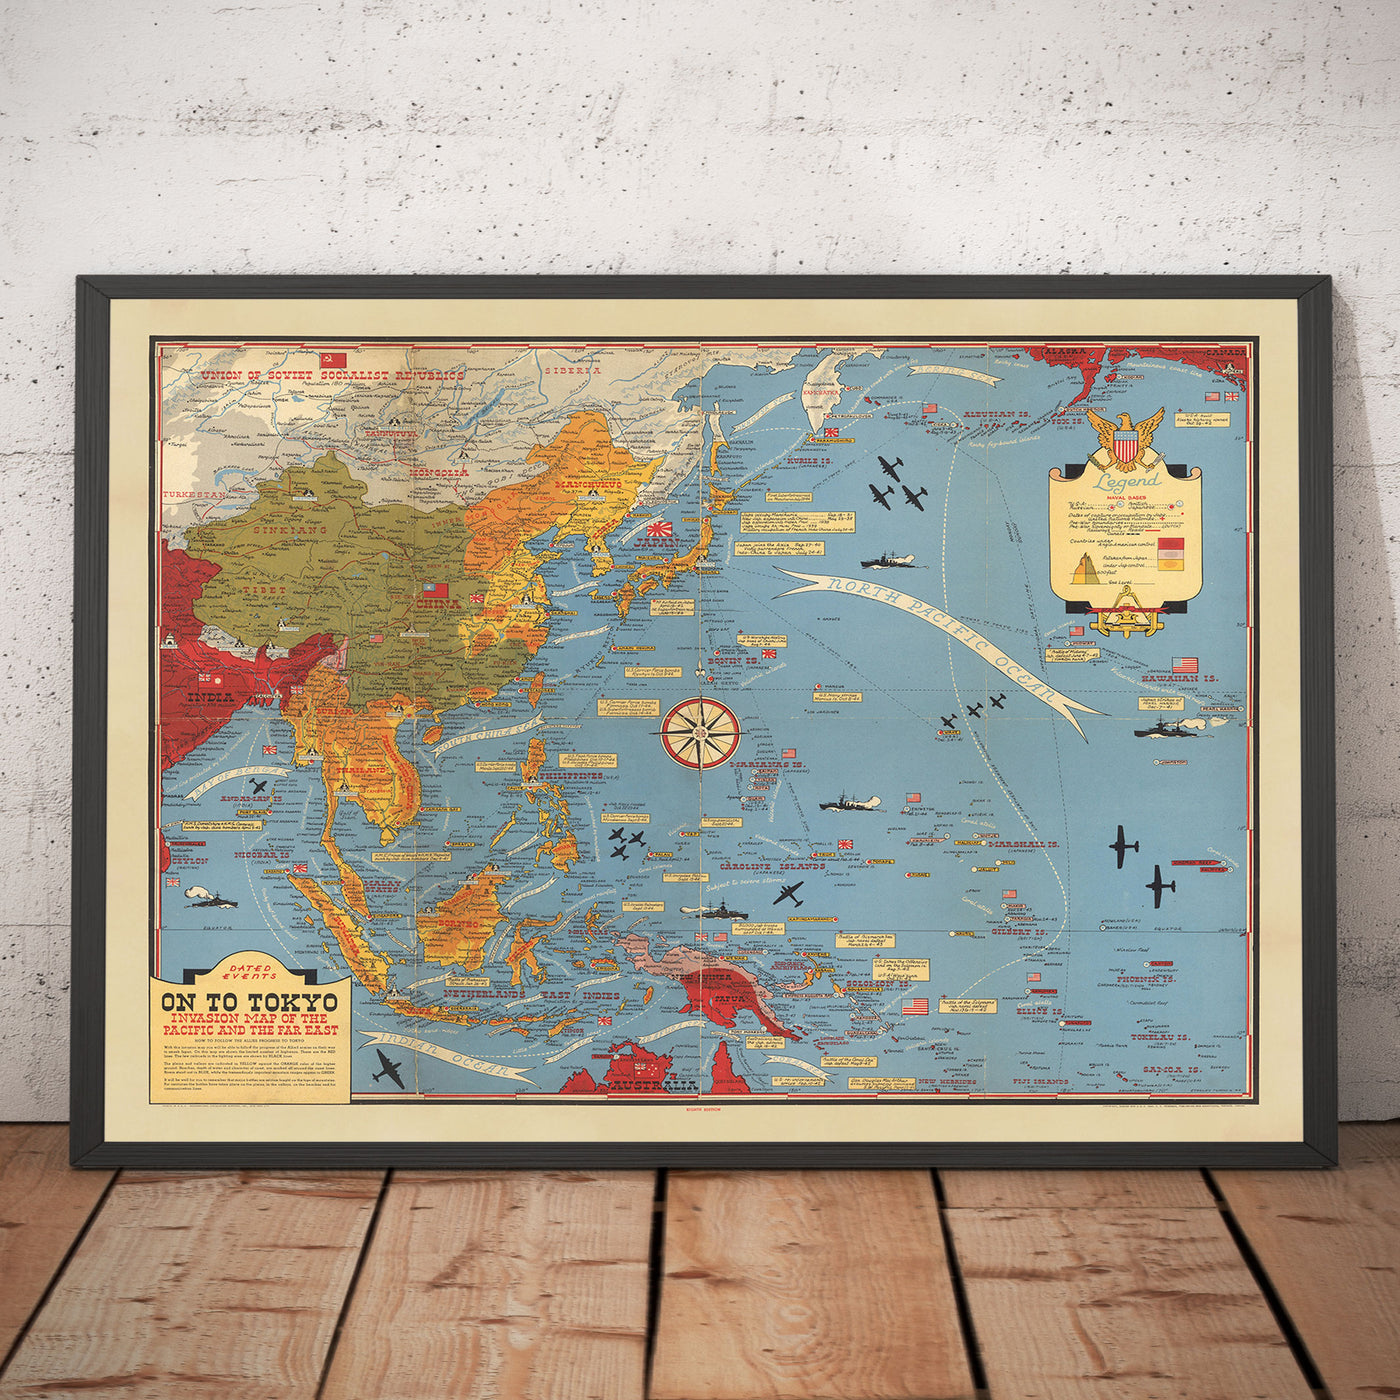 Antiguo mapa de la Segunda Guerra Mundial del Pacífico y Tokio en 1942 por Stanley Turner - "Eventos fechados" Invasión de Japón y el Lejano Oriente